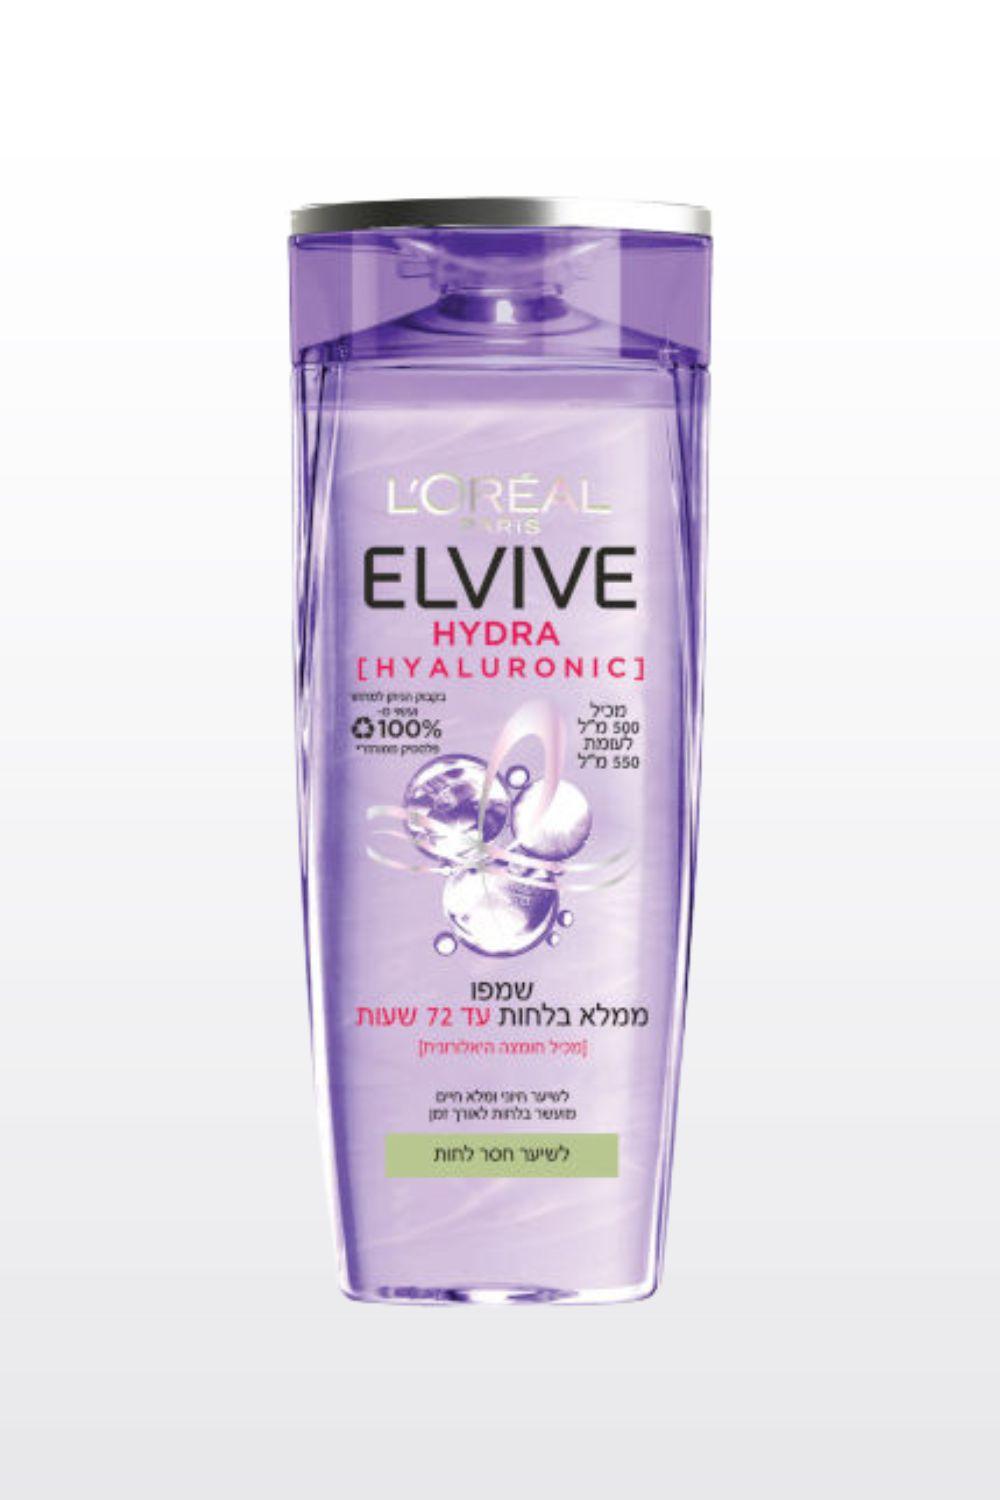 ELVIVE - שמפו לשיער עם חומצה היאלורונית ללחות עד 72 שעות 500 מ"ל - MASHBIR//365